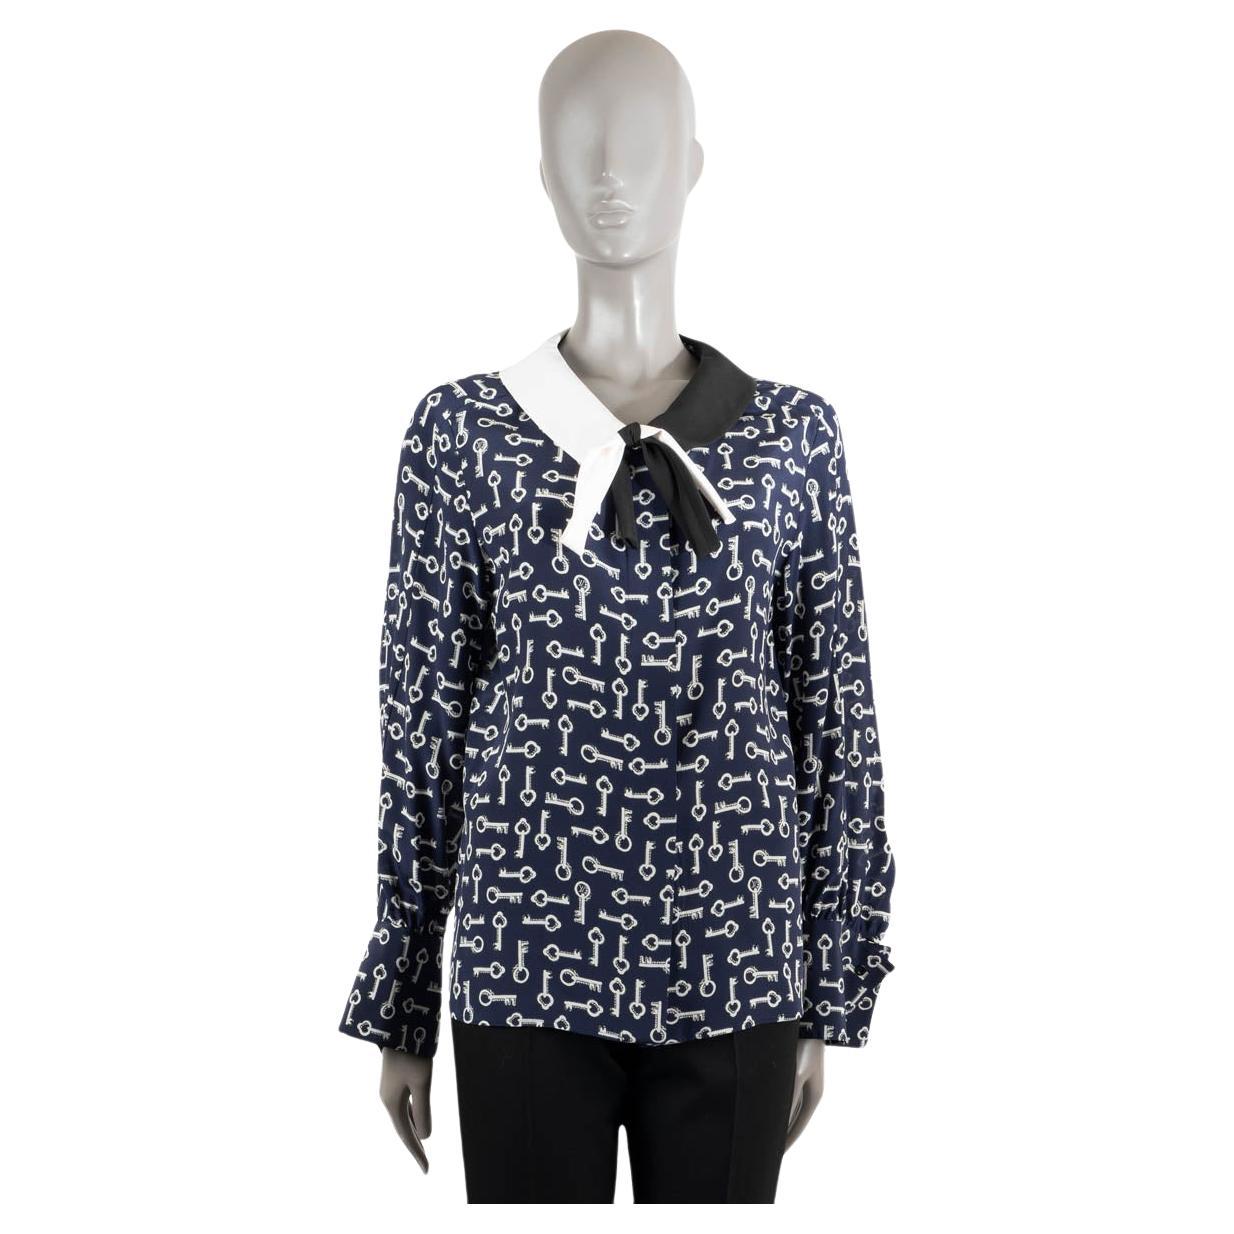 LOUIS VUITTON marineblaues & weißes Seidenhemd KEY PRINT in Marineblau & Weiß 36 XS im Angebot